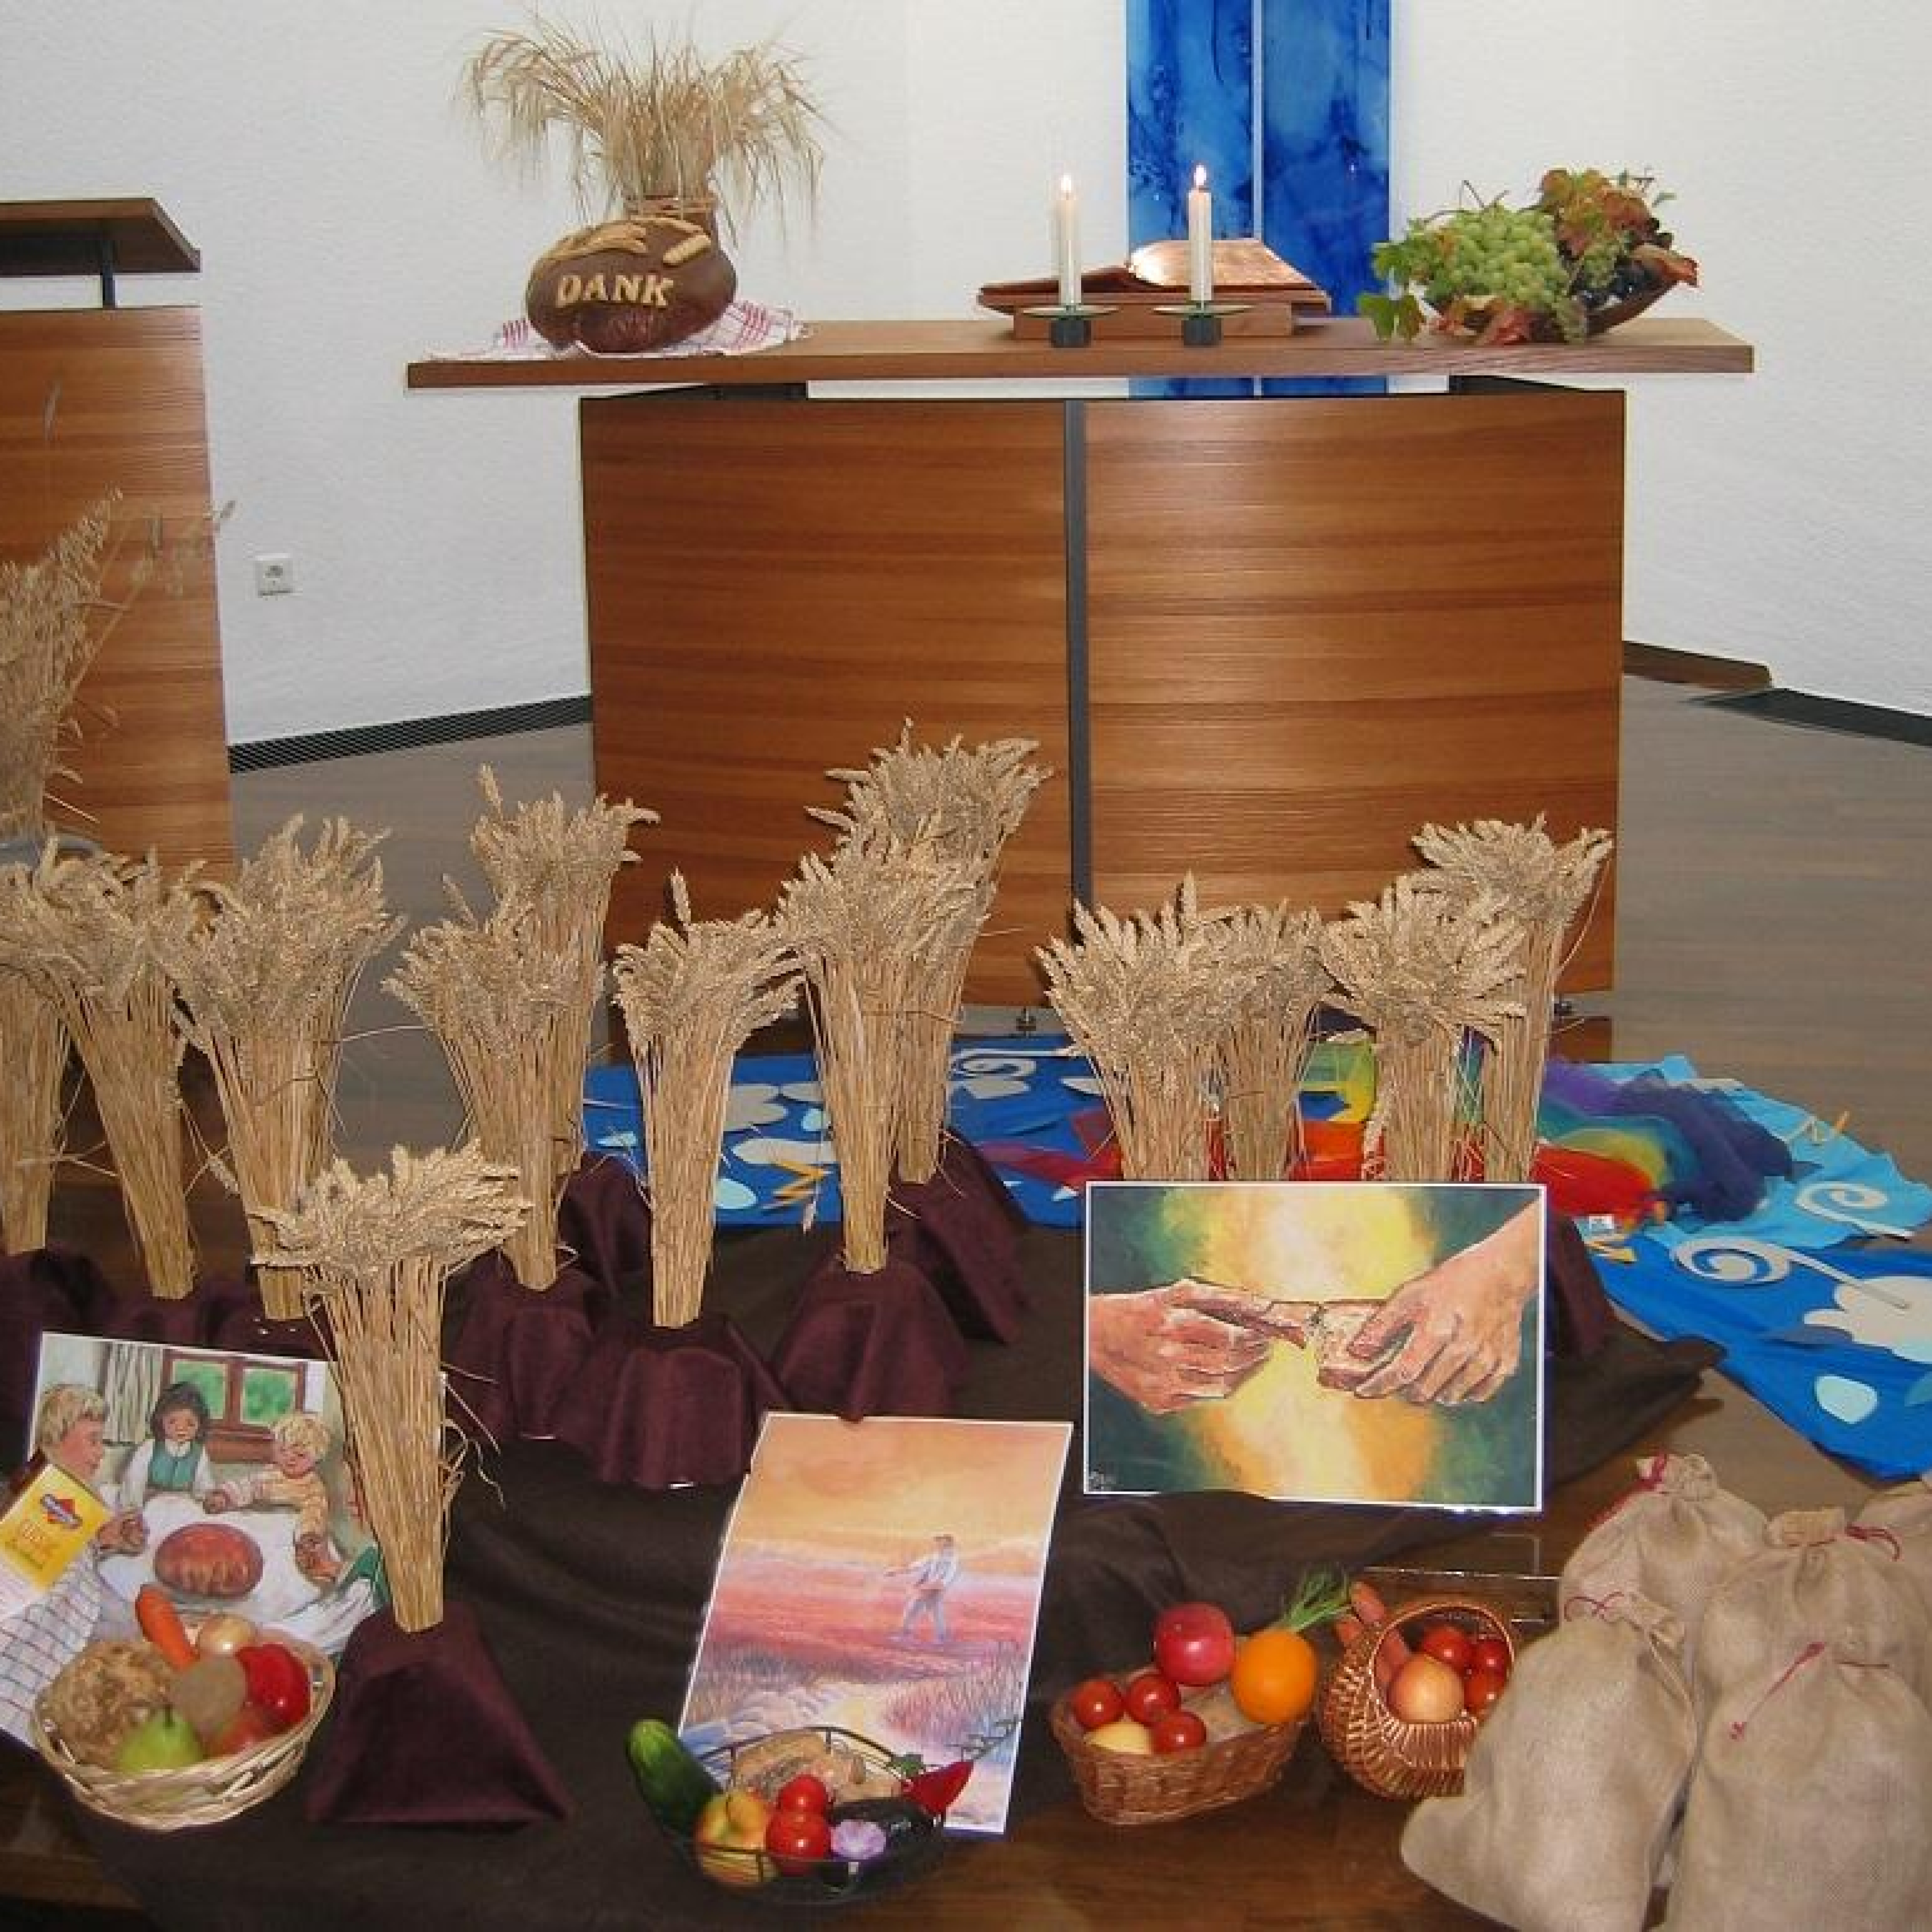 Erntedank-Altar mit Ähren, Obst und Gemüsekörbchen und Bildern